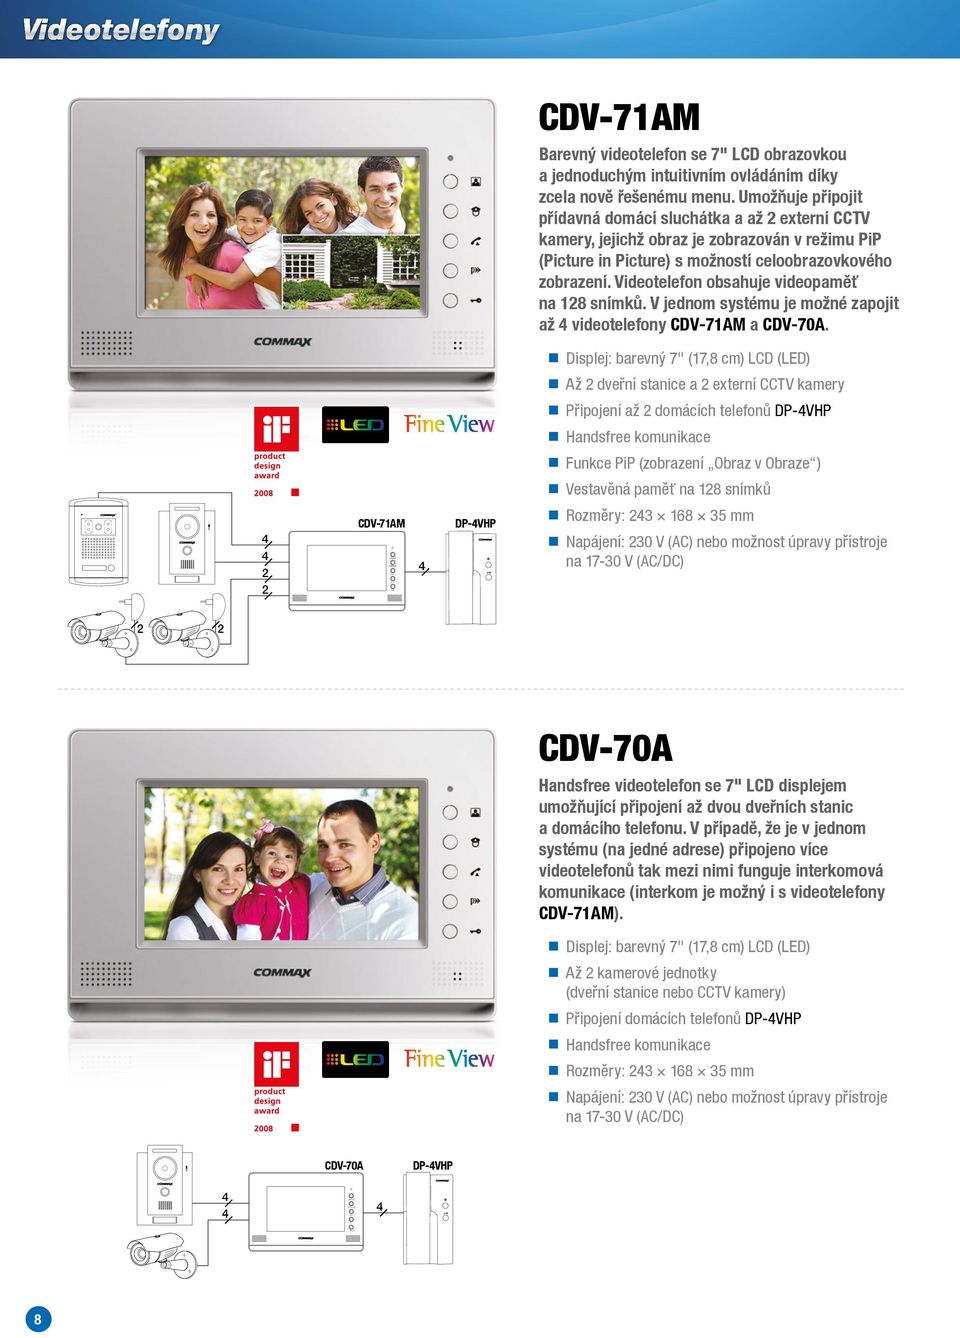 Videotelefon obsahuje videopaměť na 18 snímků. V jednom systému je možné zapojit až videotelefony CDV-71AM a CDV-70A.